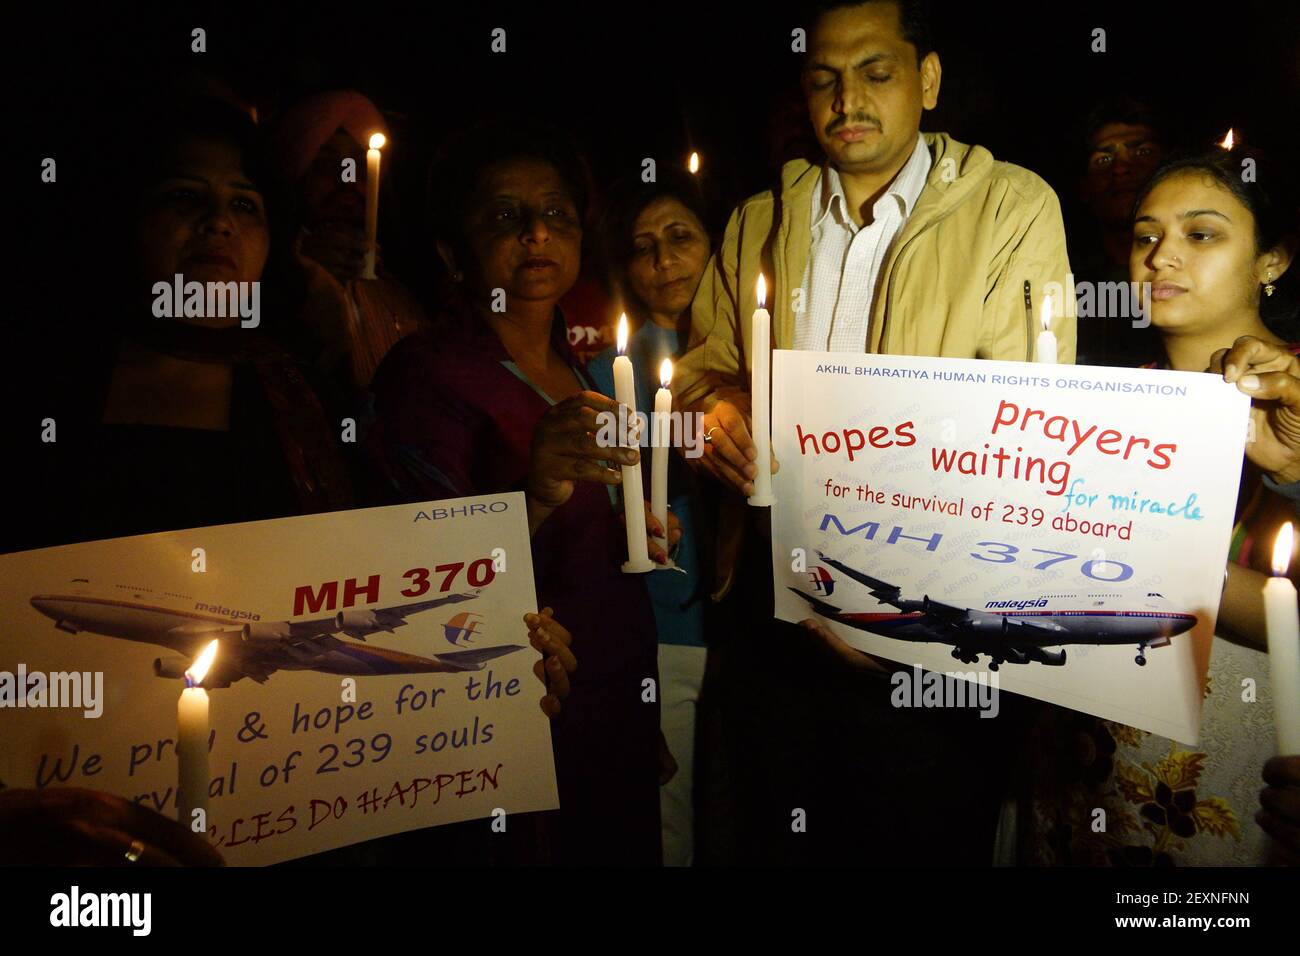 Amritsar, Indien - 20. März 2014: Mitglieder der Menschenrechtsorganisation Akhil Bharatiya veranstalten am Donnerstag in Amritsar eine Kerzenlichtmahnwache zur Sicherheit der Passagiere des vermissten malaysischen Flugzeugs. Das verschwundene Flugzeug verschwand vor einer Woche mit 227 Passagieren und 12 Besatzungsmitgliedern und verblüffte die internationalen Rettungs- und Suchteams, die keine Überreste oder Hinweise in den Gewässern rund um Südostasien gefunden haben. Alle Passagiere und die Besatzung werden derzeit wegen möglicher Sabotage untersucht, obwohl keine Beweise für eine solche Aktivität gefunden wurden. (Foto: Prabhjot Gill/Pacific Press/Sipa USA) Stockfoto